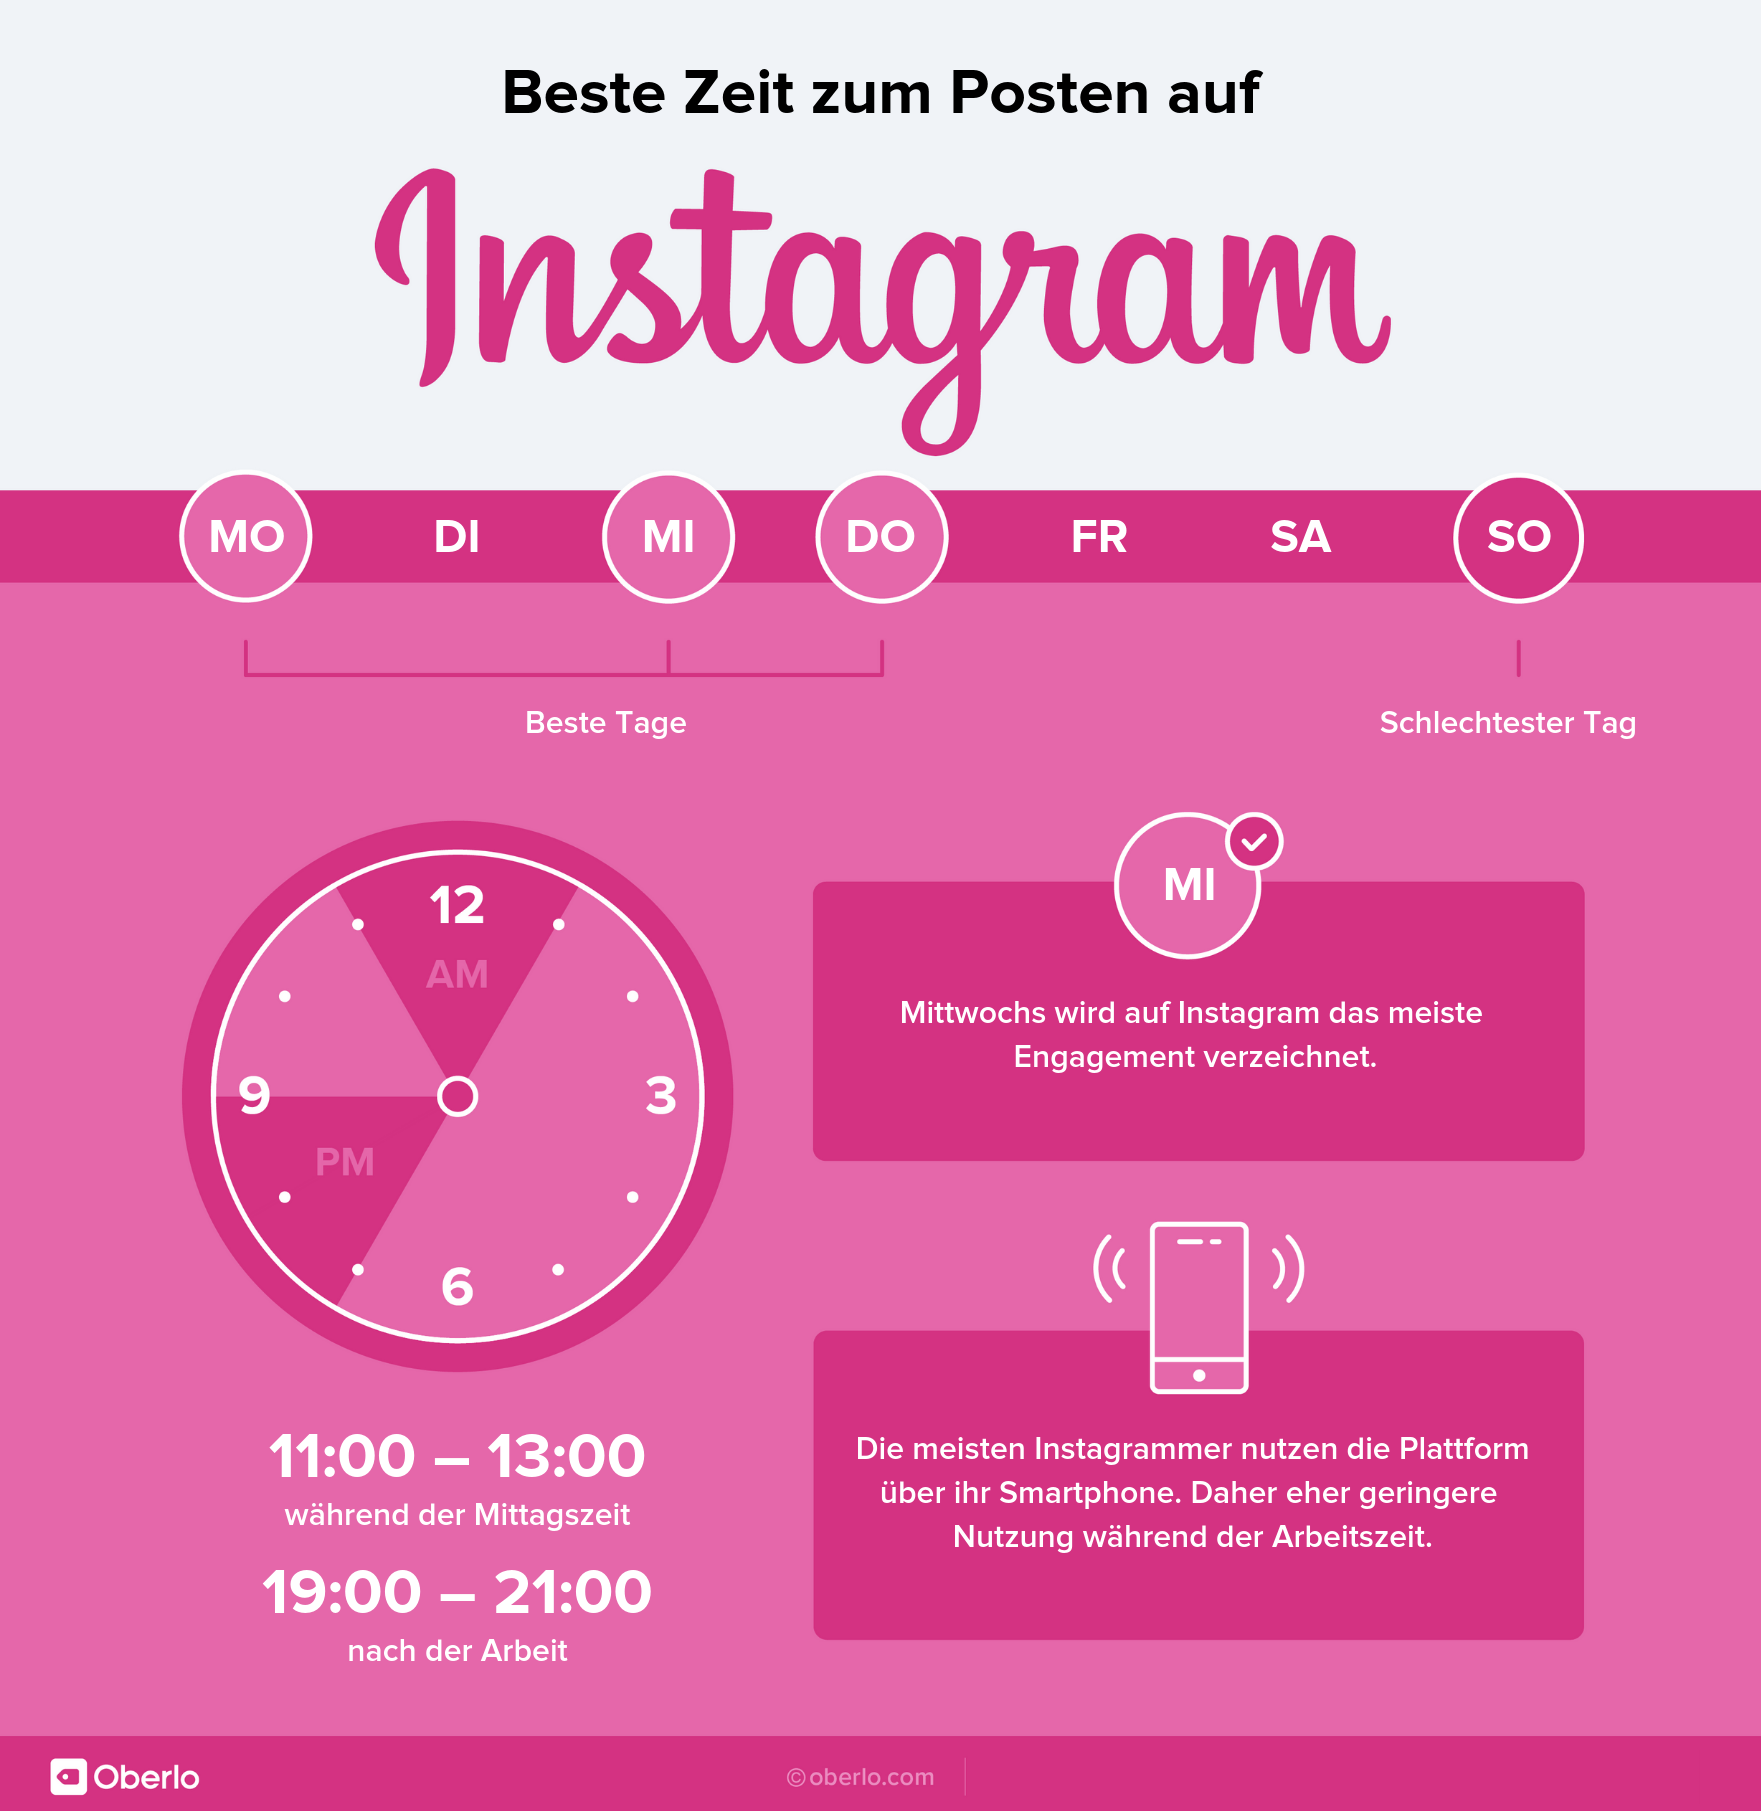 Beste Zeit zum Posten - Instagram Infografik